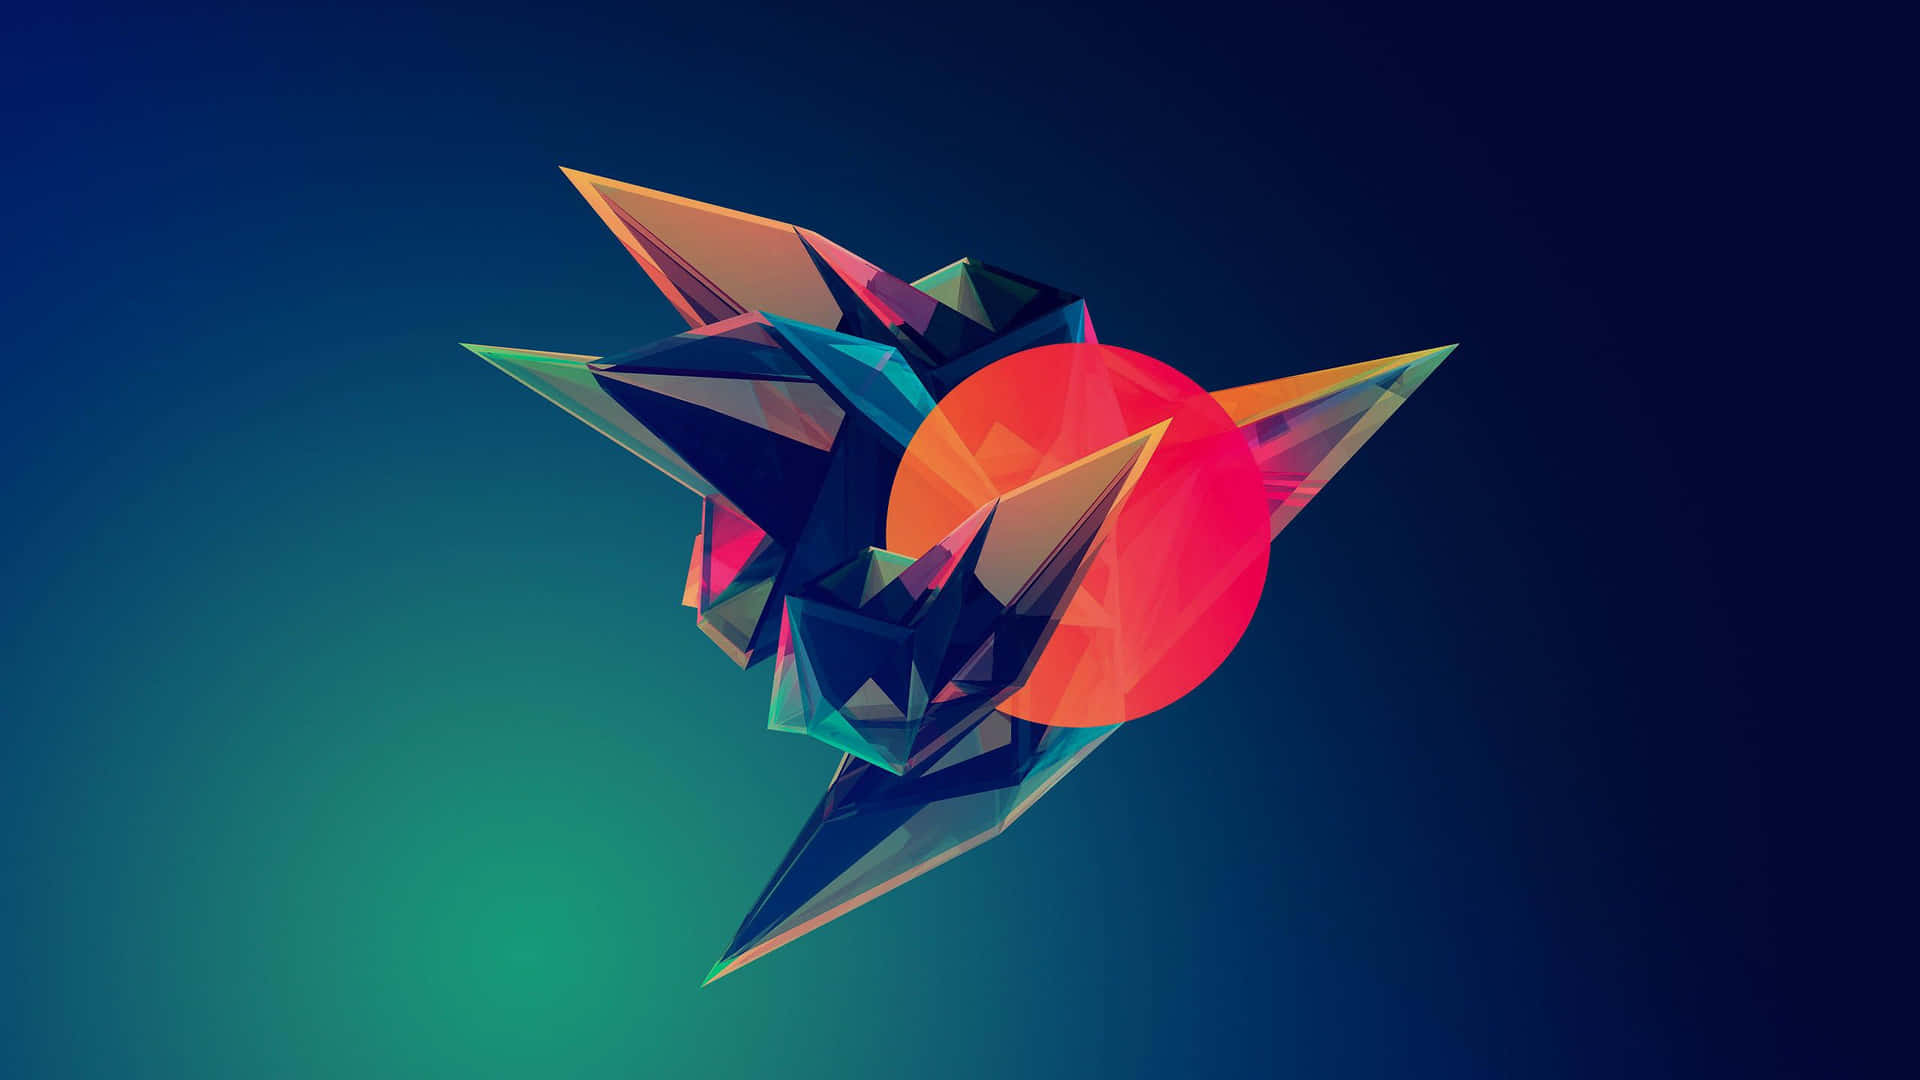 Unlindo Y Divertido Artwork Digital De Un Planeta Naranja Y Azul. Fondo de pantalla